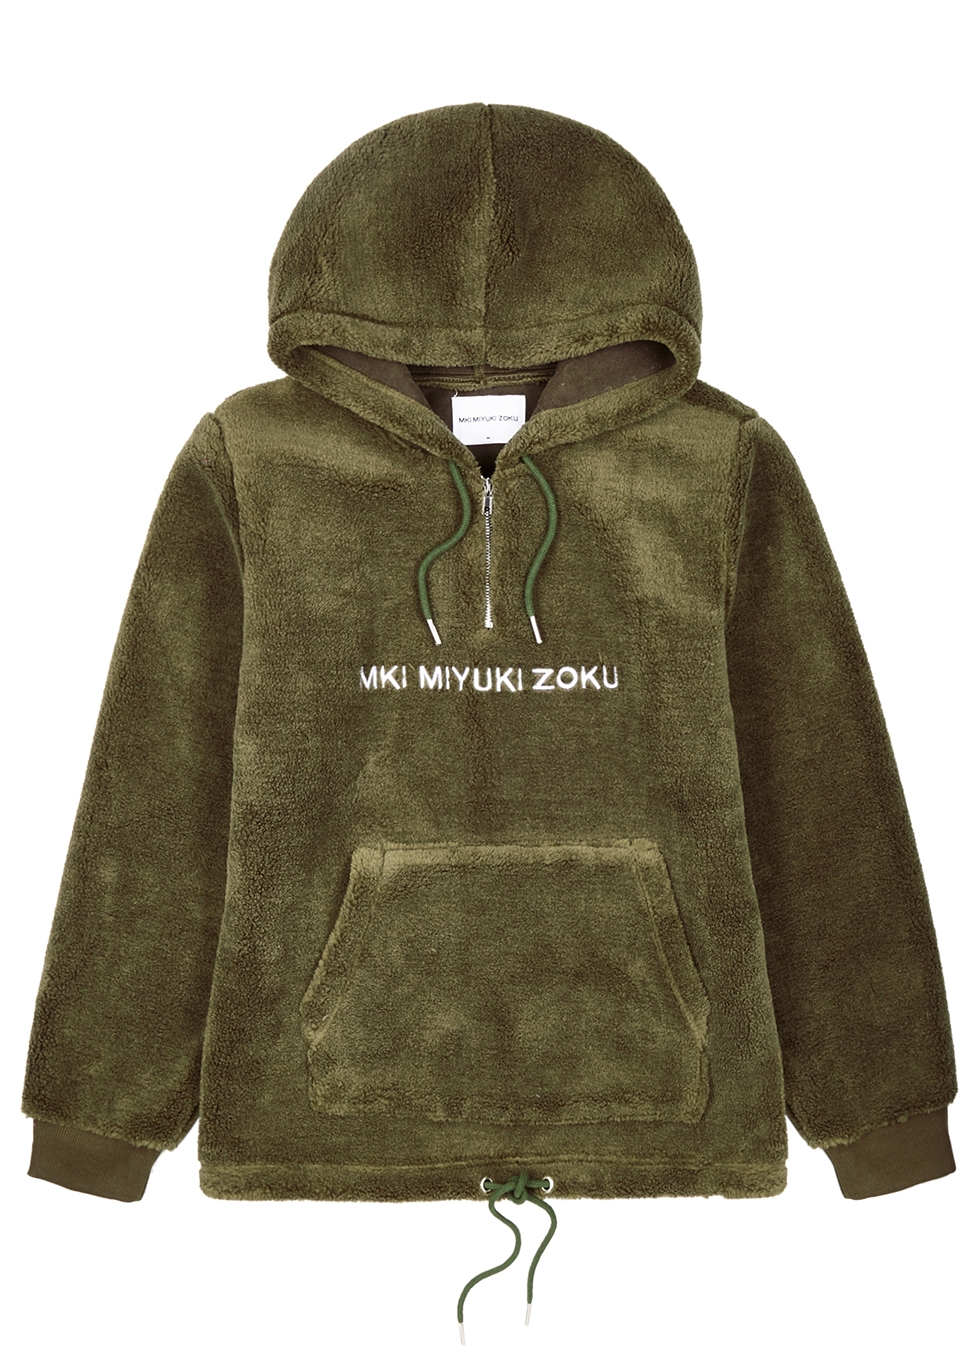 mki fleece hoodie